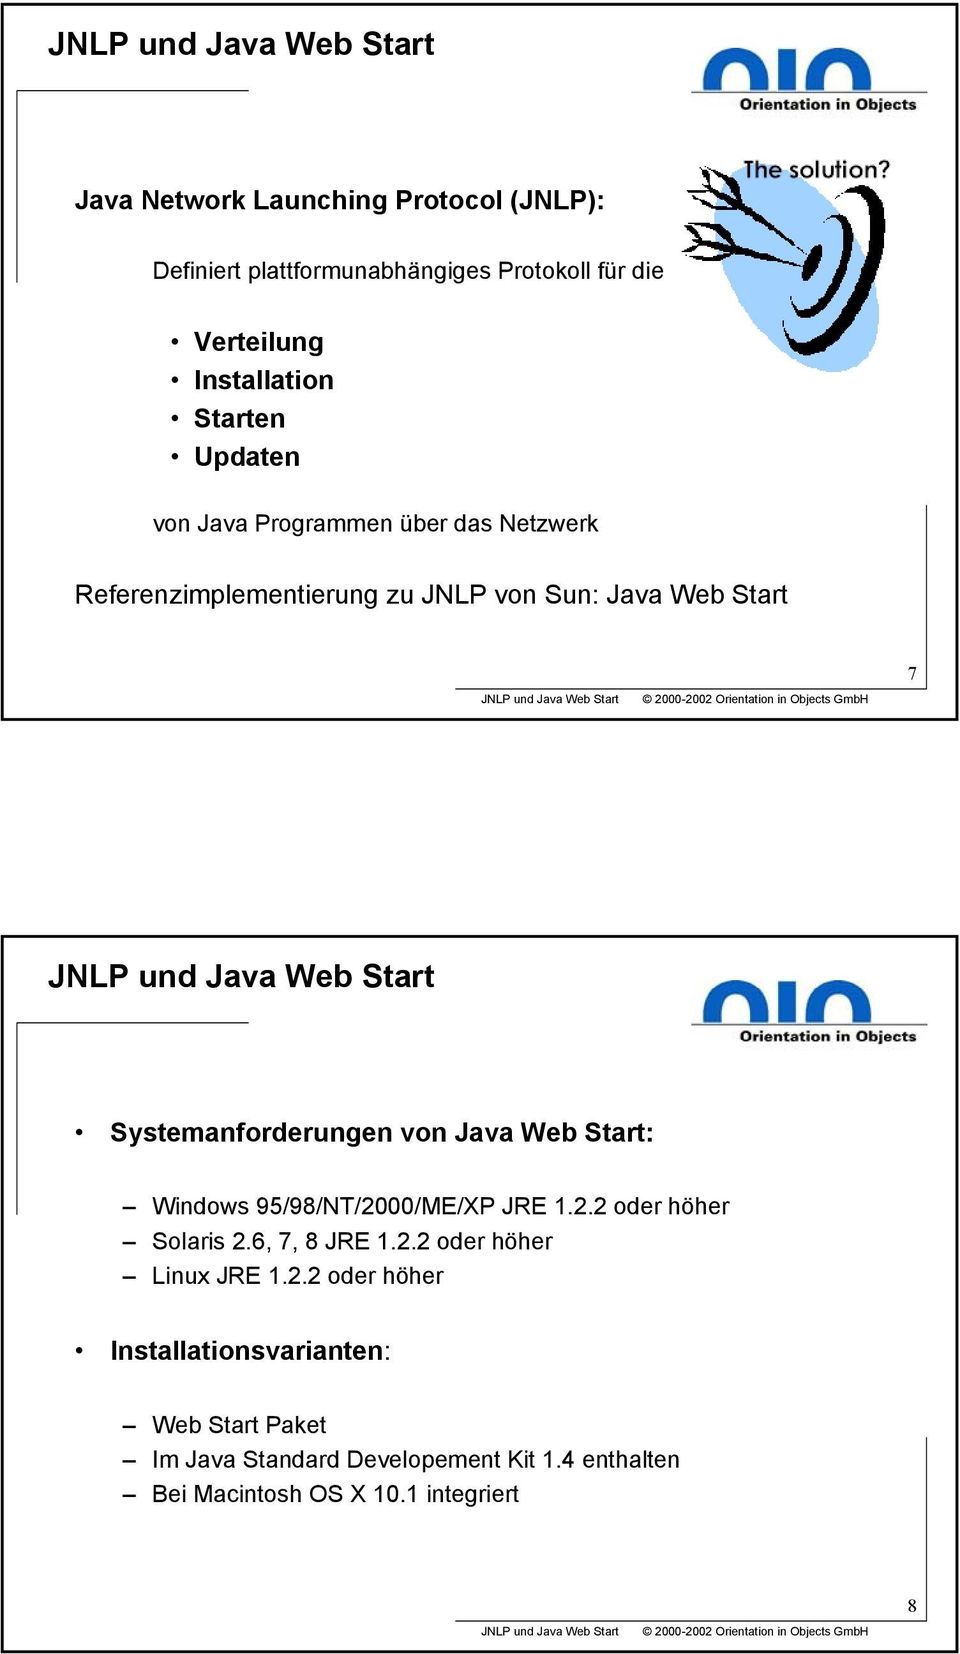 von Java Web Start: Windows 95/98/NT/20